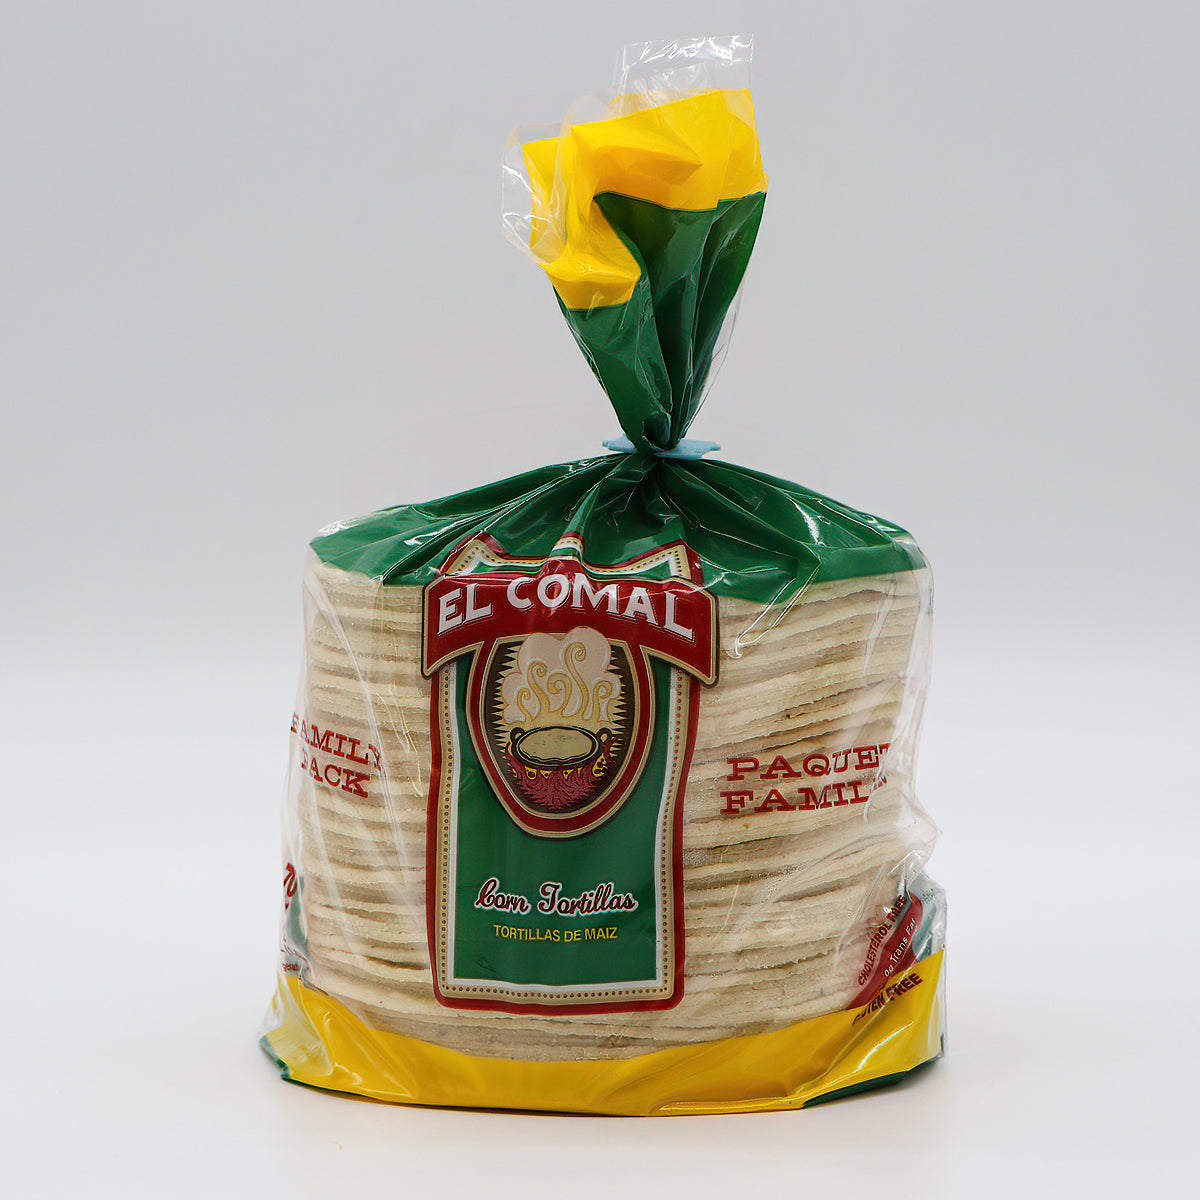 El Comal White Corn Tortillas, 70 ct / 64 oz - Foods Co.